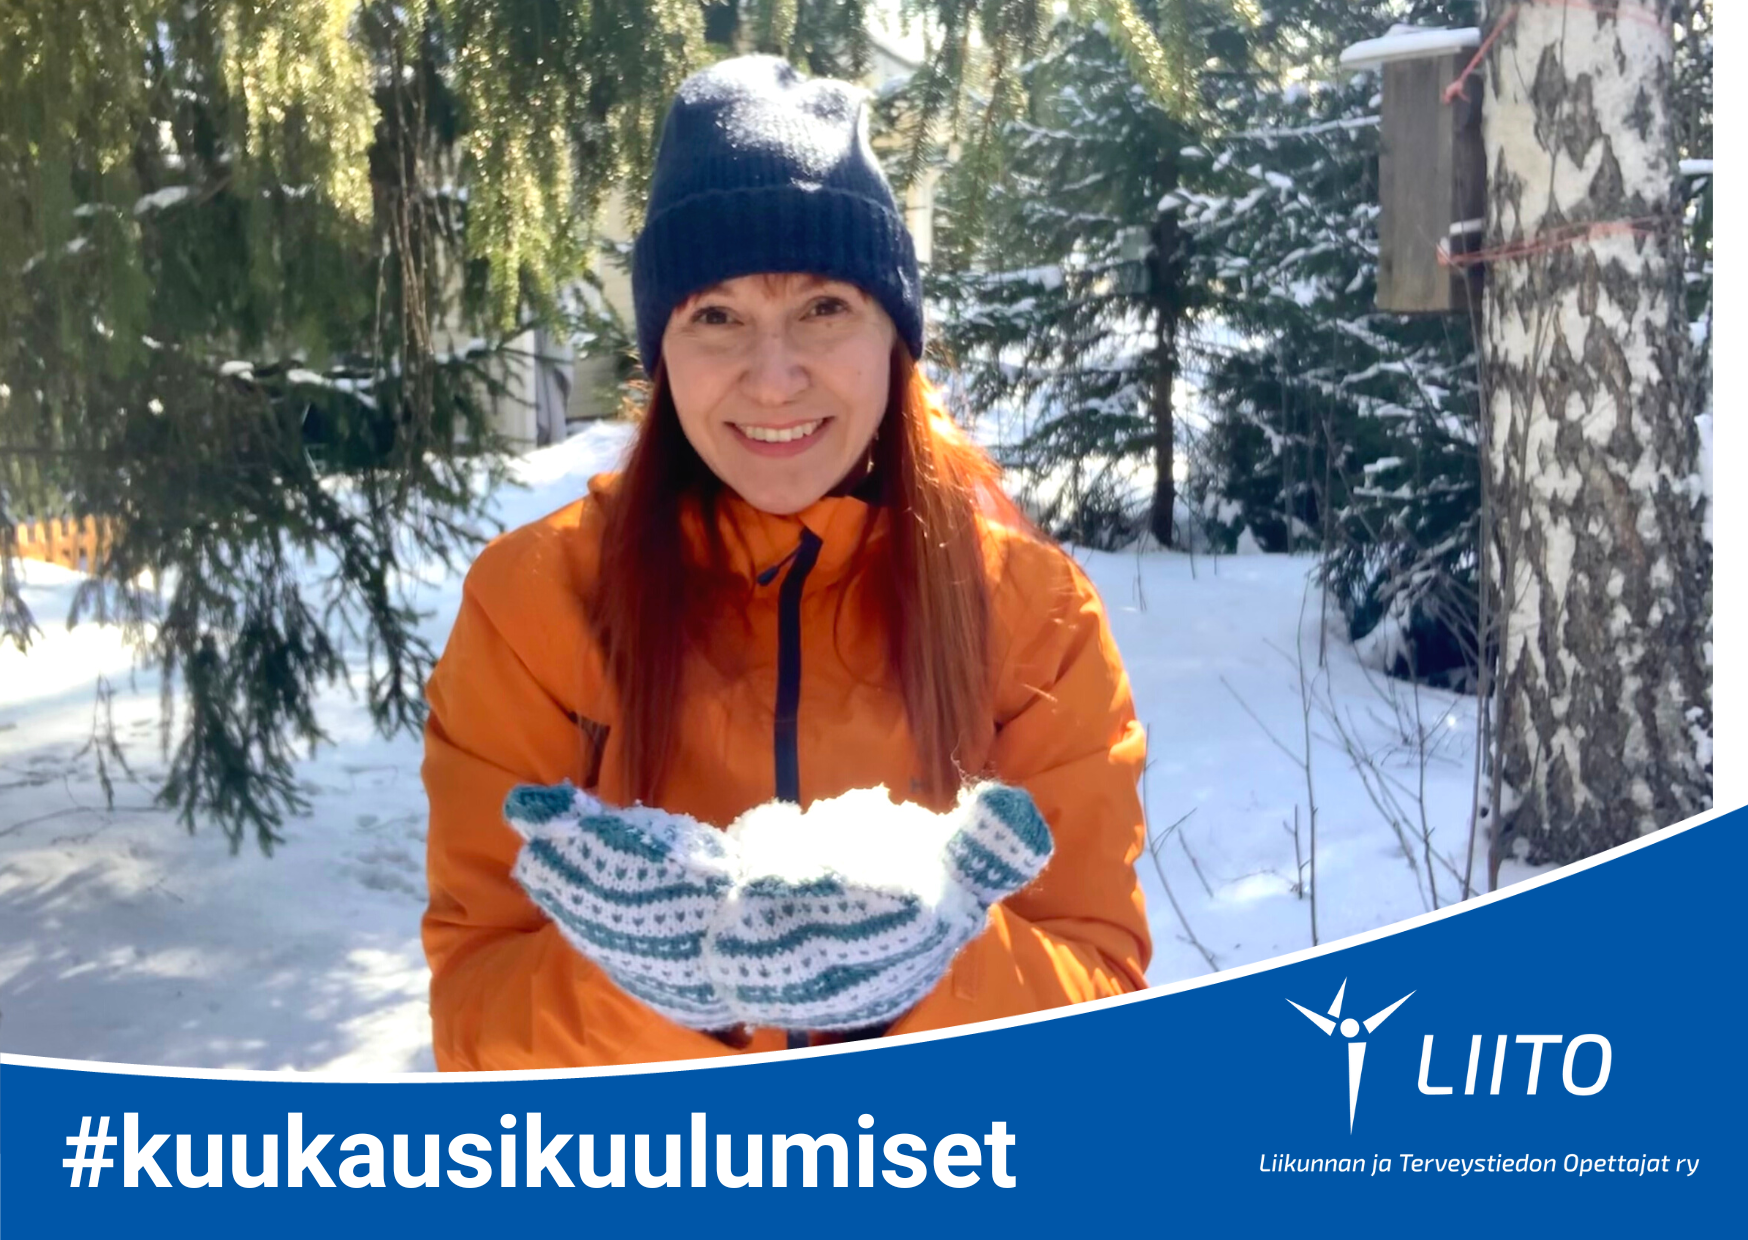 Kuvassa hymyilee LIITO ry:n pedagoginen asiantuntija Anna Haapalainen lumisessa metsässä kannatellen lunta lapasissa.